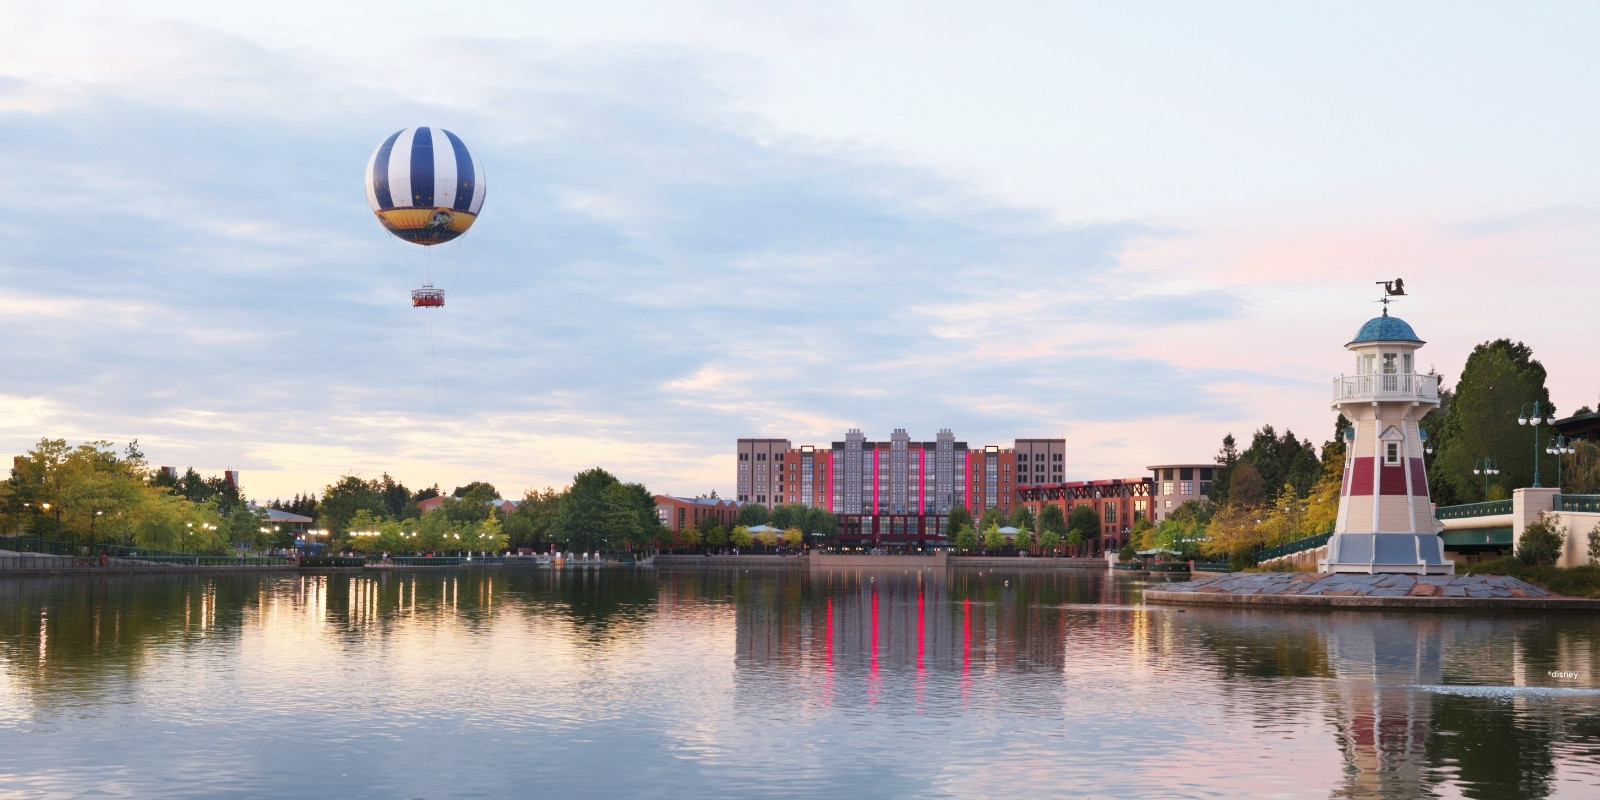 Hotel New York, ein weiß-roter Wasserturm und ein Heißluftballon am Lake Disney